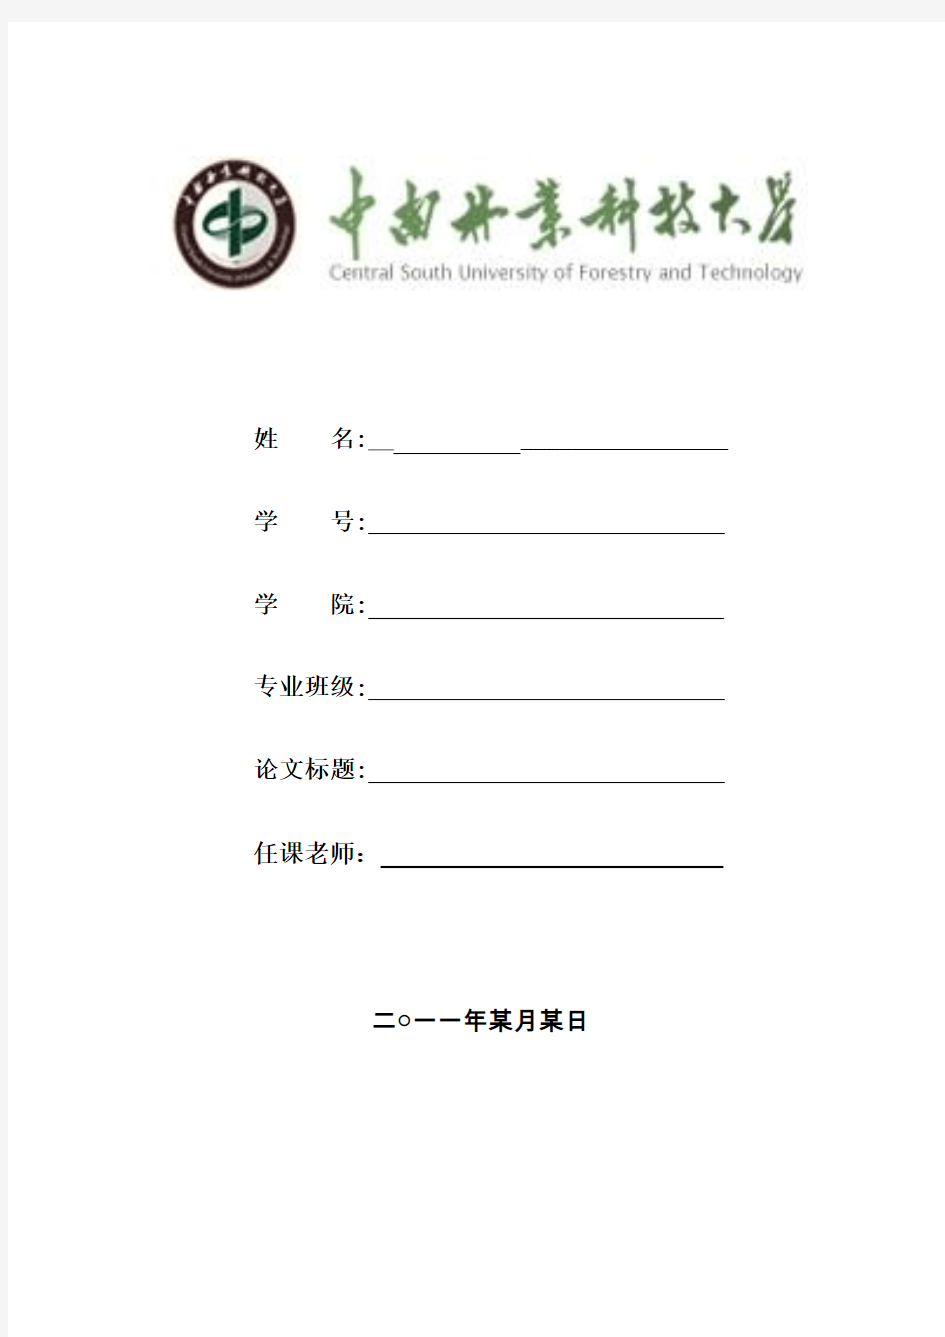 中南林业科技大学一般论文的封面